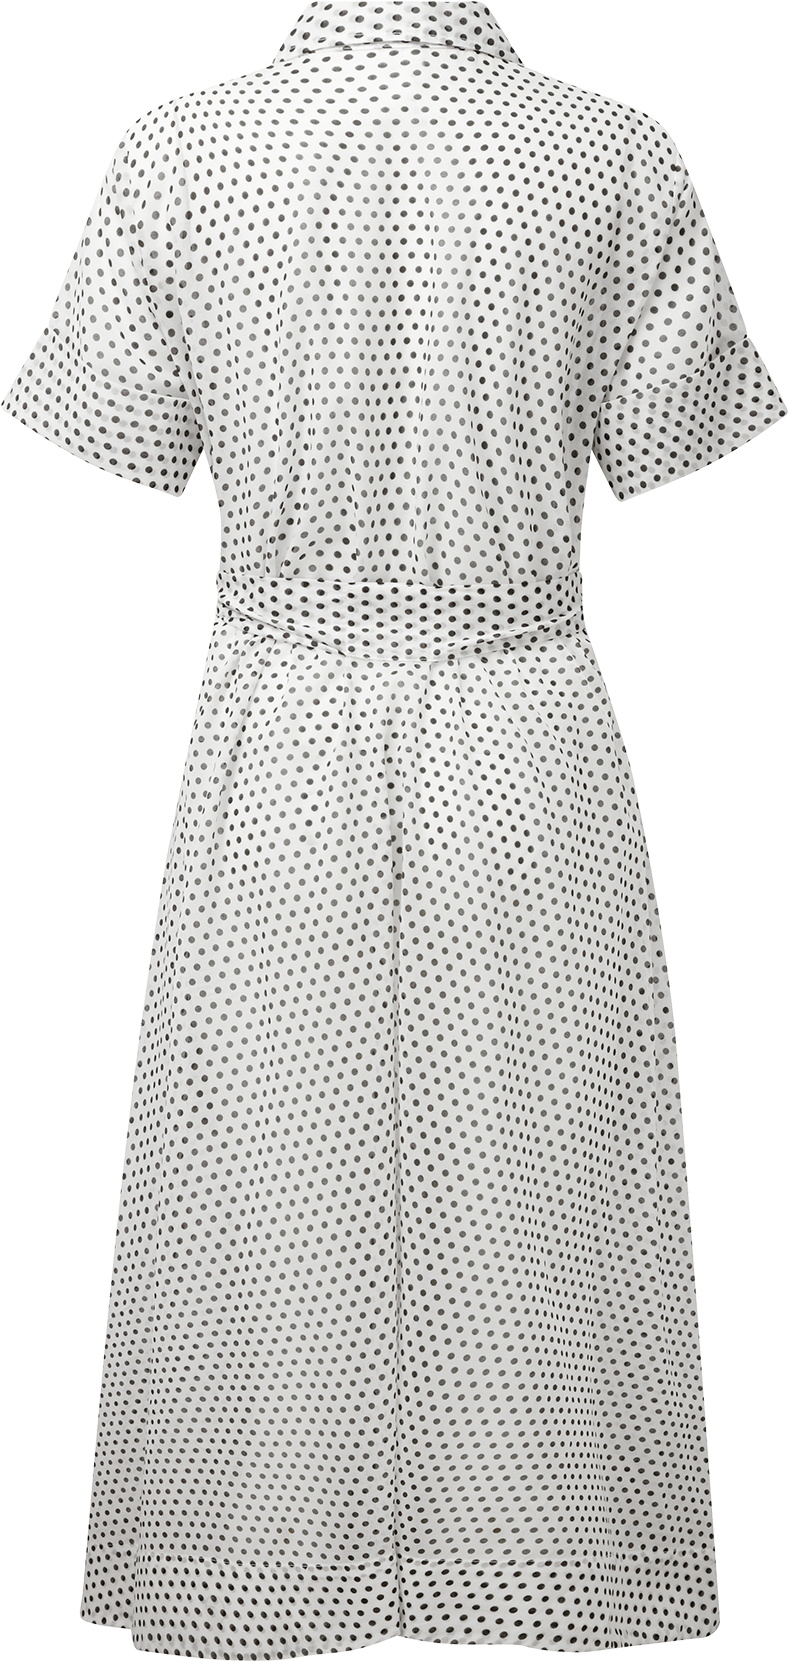 White Polka Dot Shirt Dress - Day Dress (1200x1740), Png Download